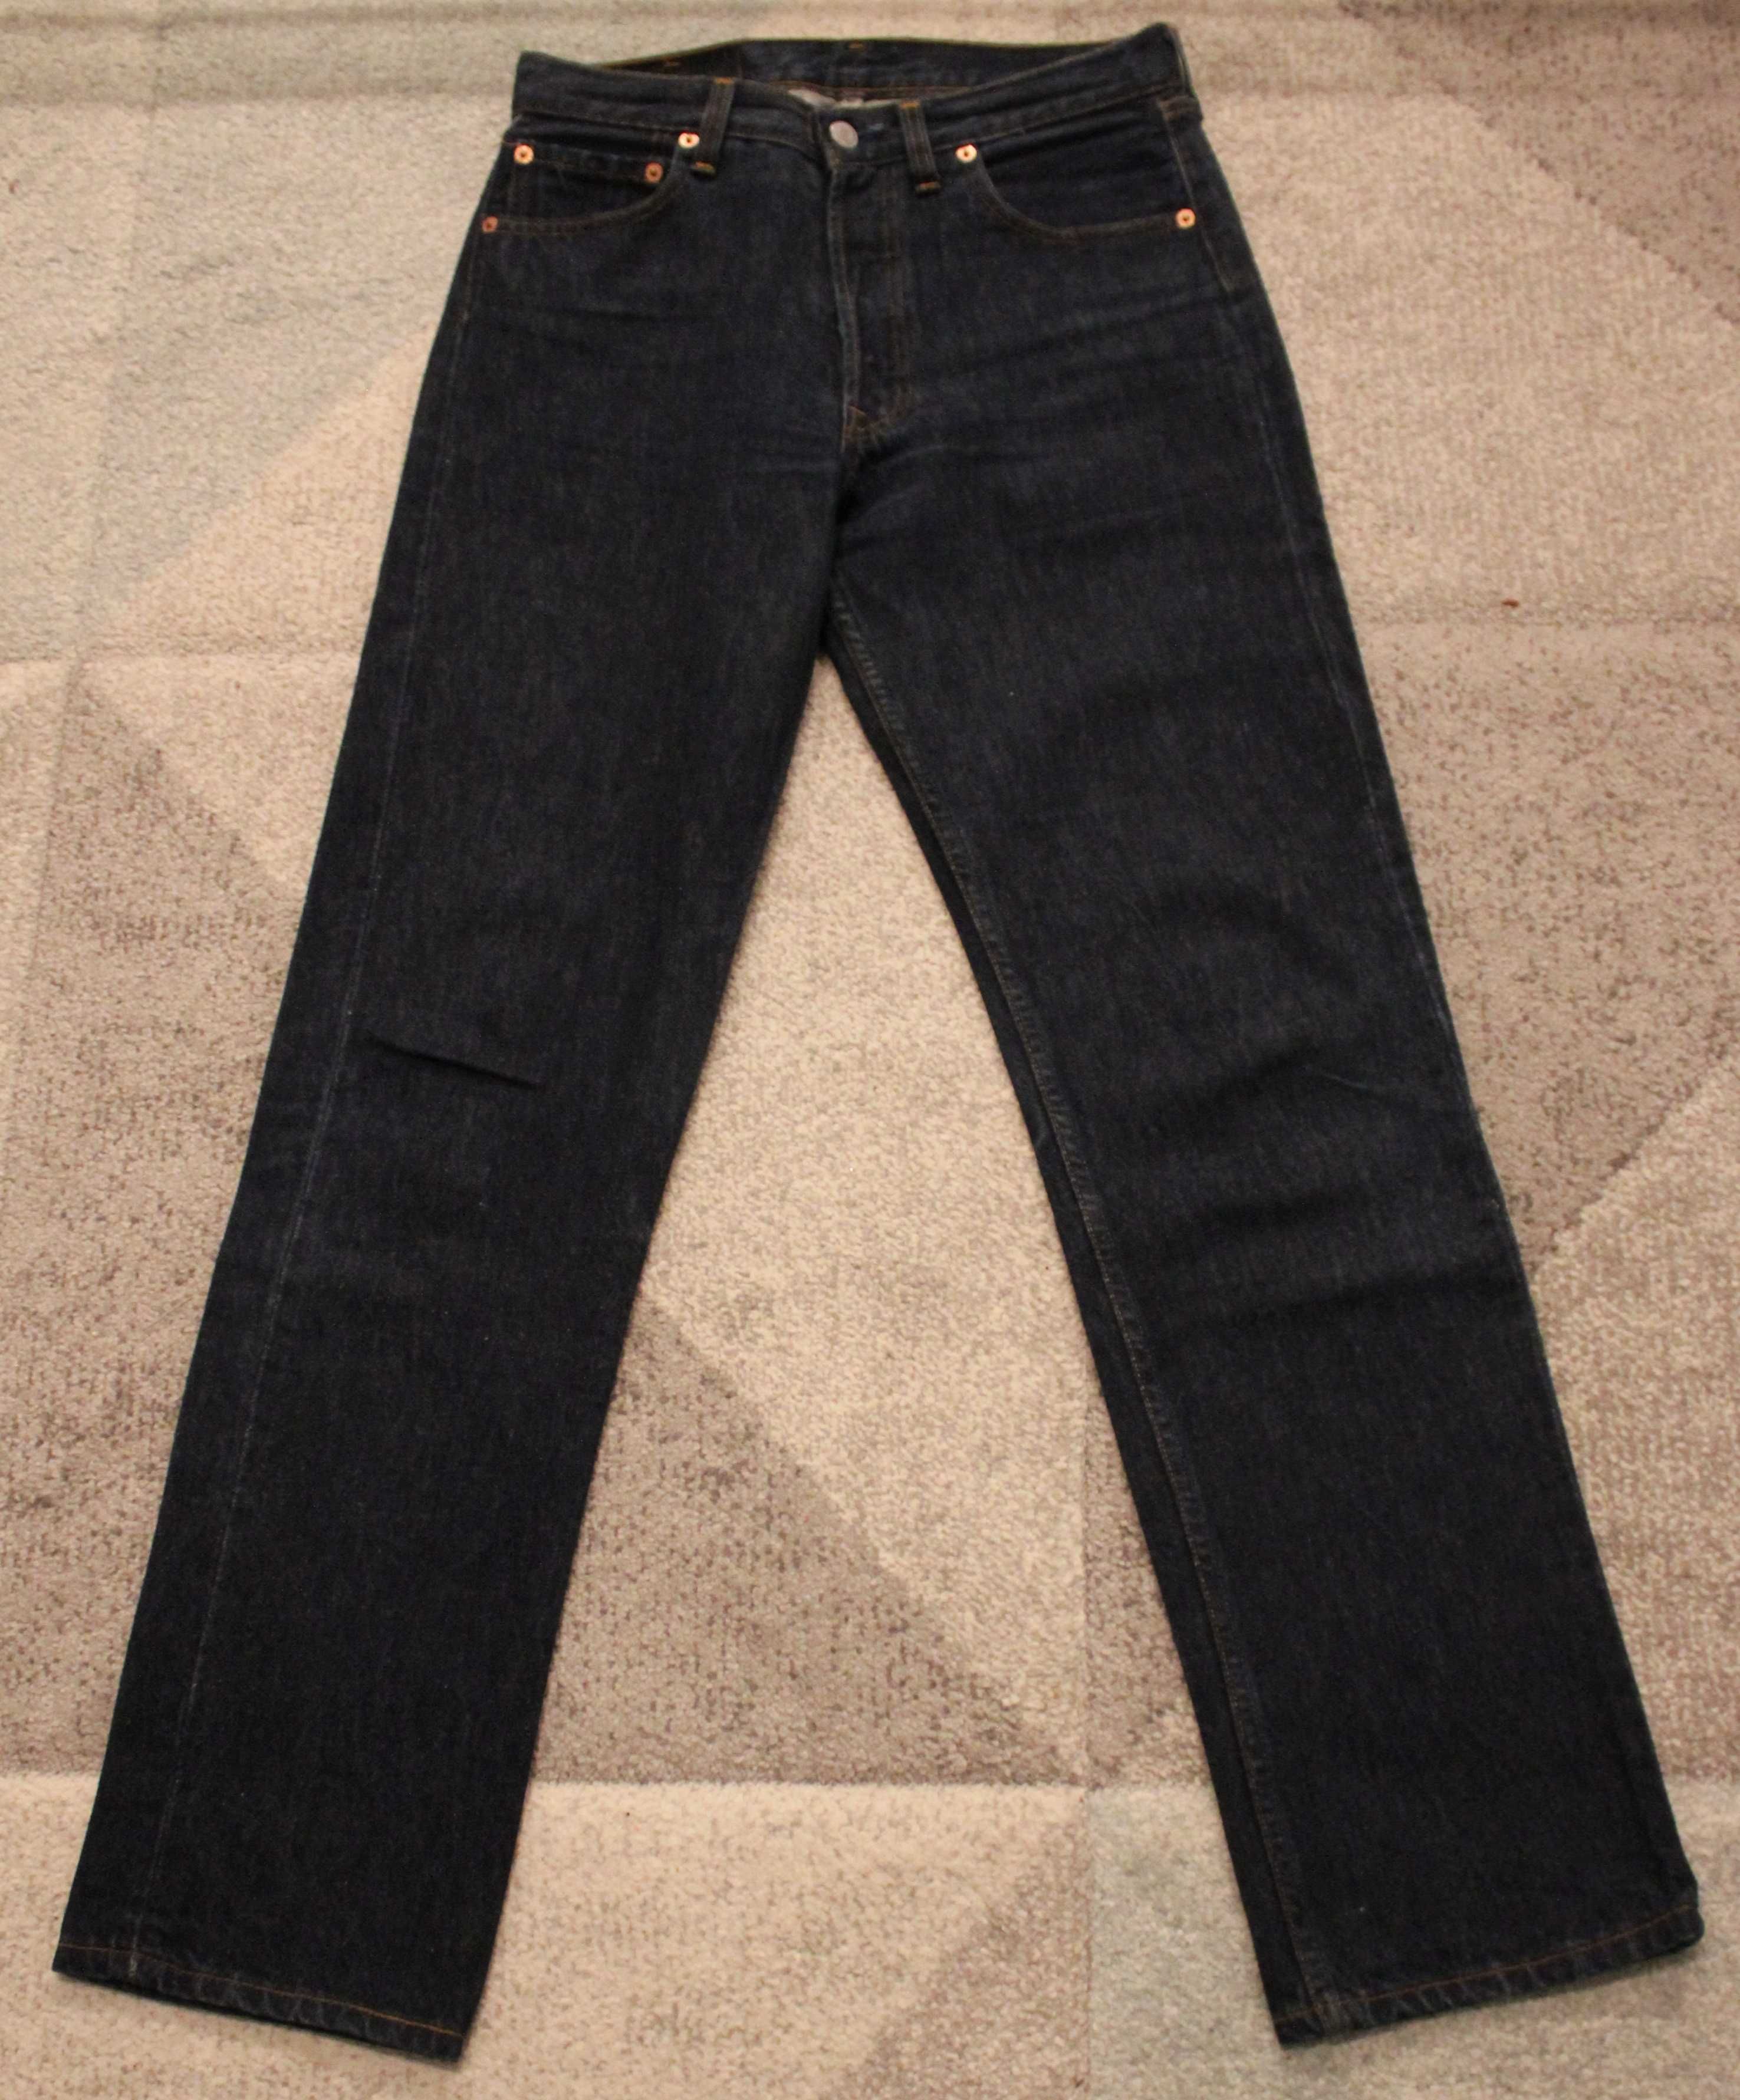 Jeans (blugi) LEVI'S 501, masura W 29, L 32